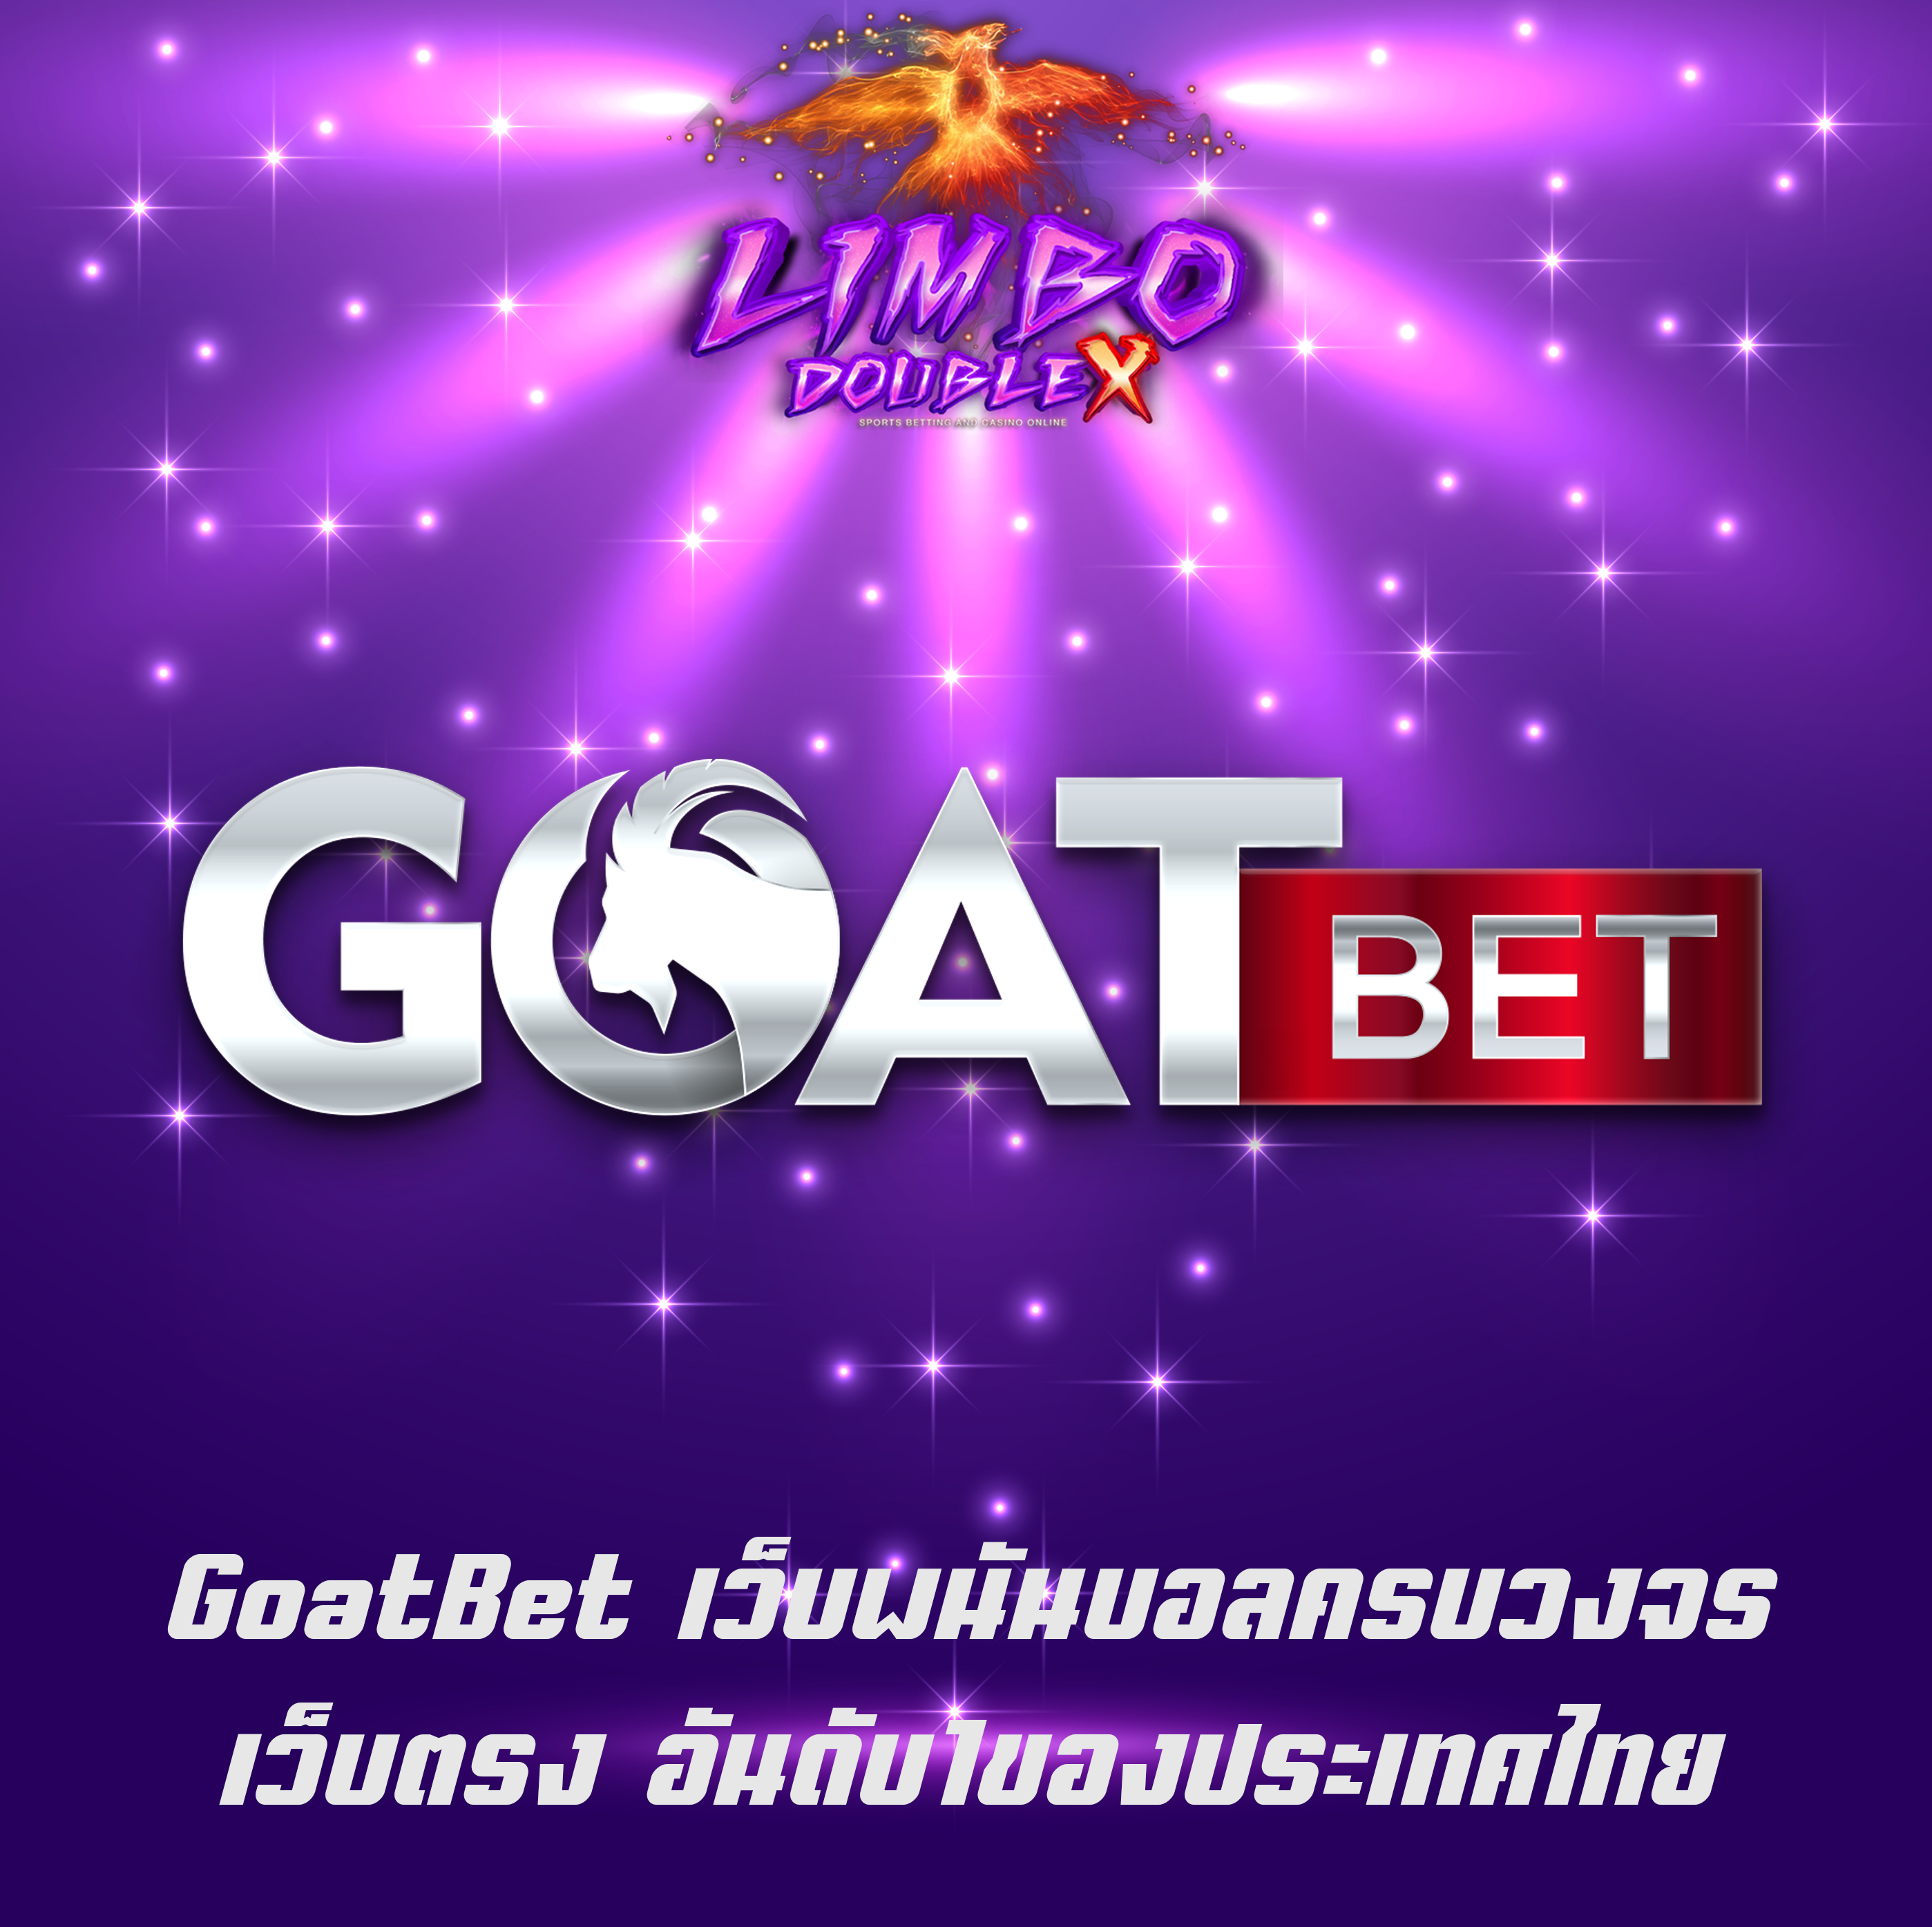 GoatBet เว็บพนันบอลครบวงจร เว็บตรง อันดับ1ของประเทศไทย